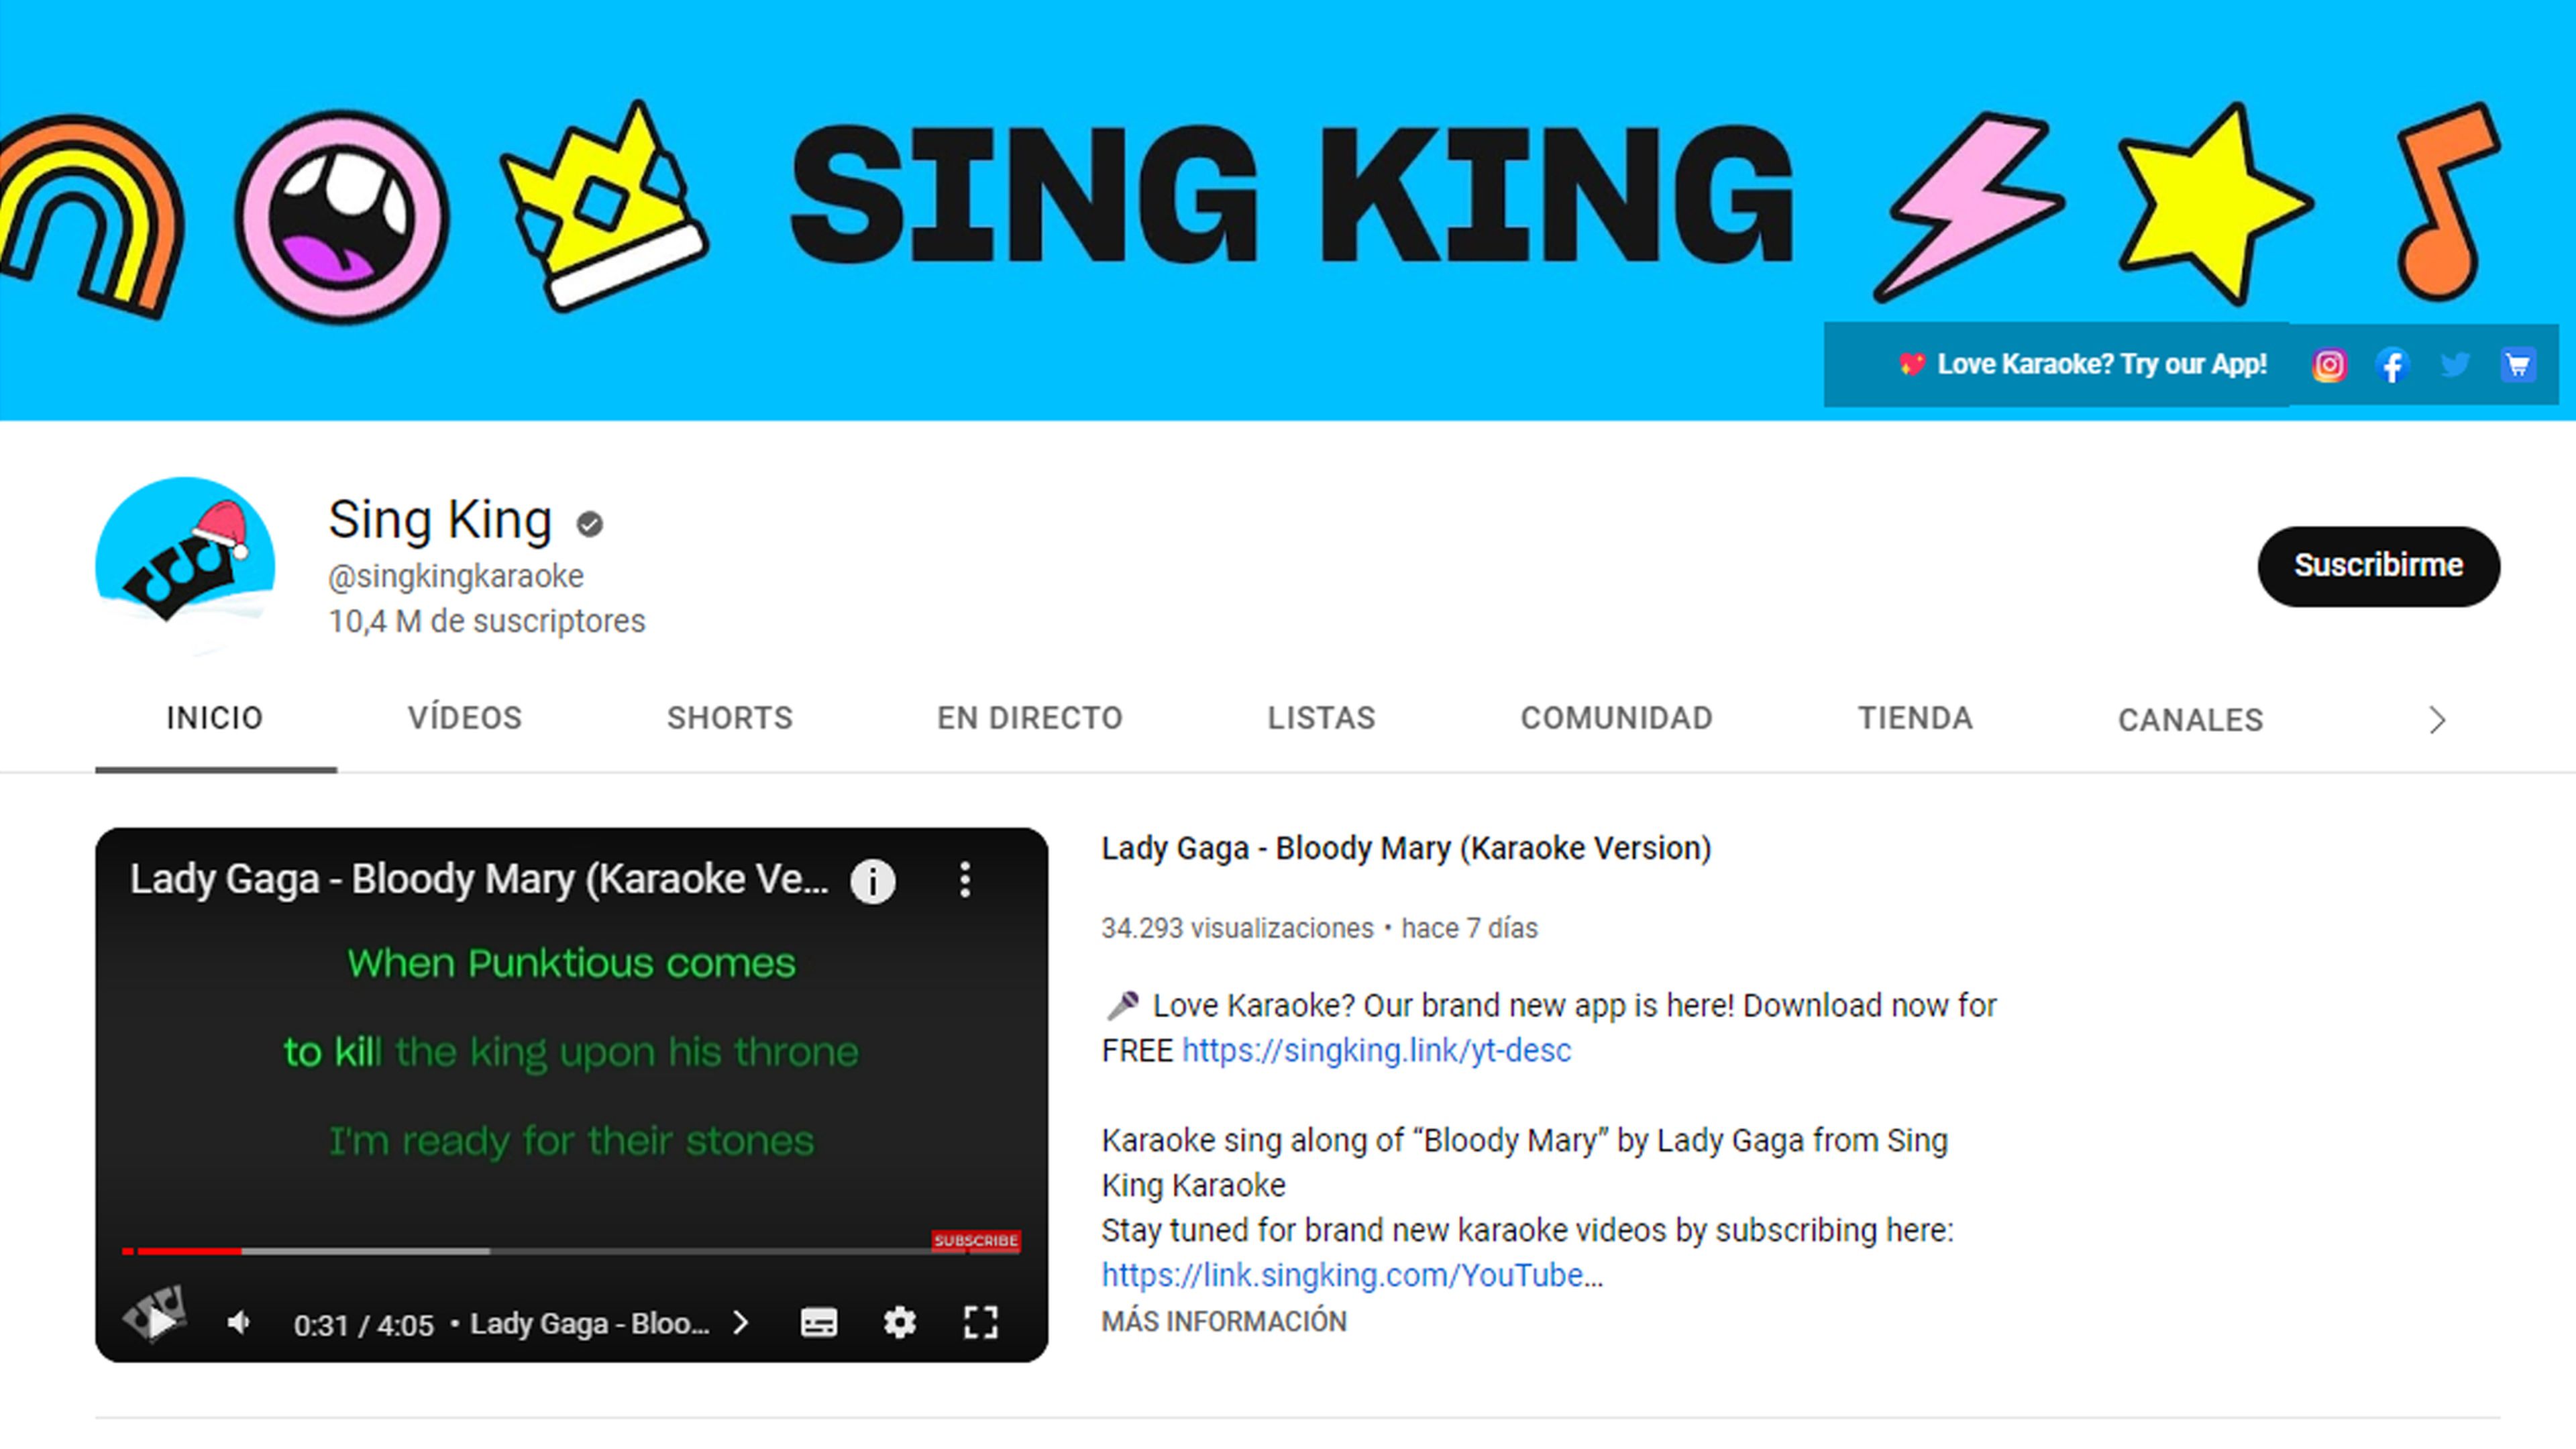 Canal de YouTube: Sing King